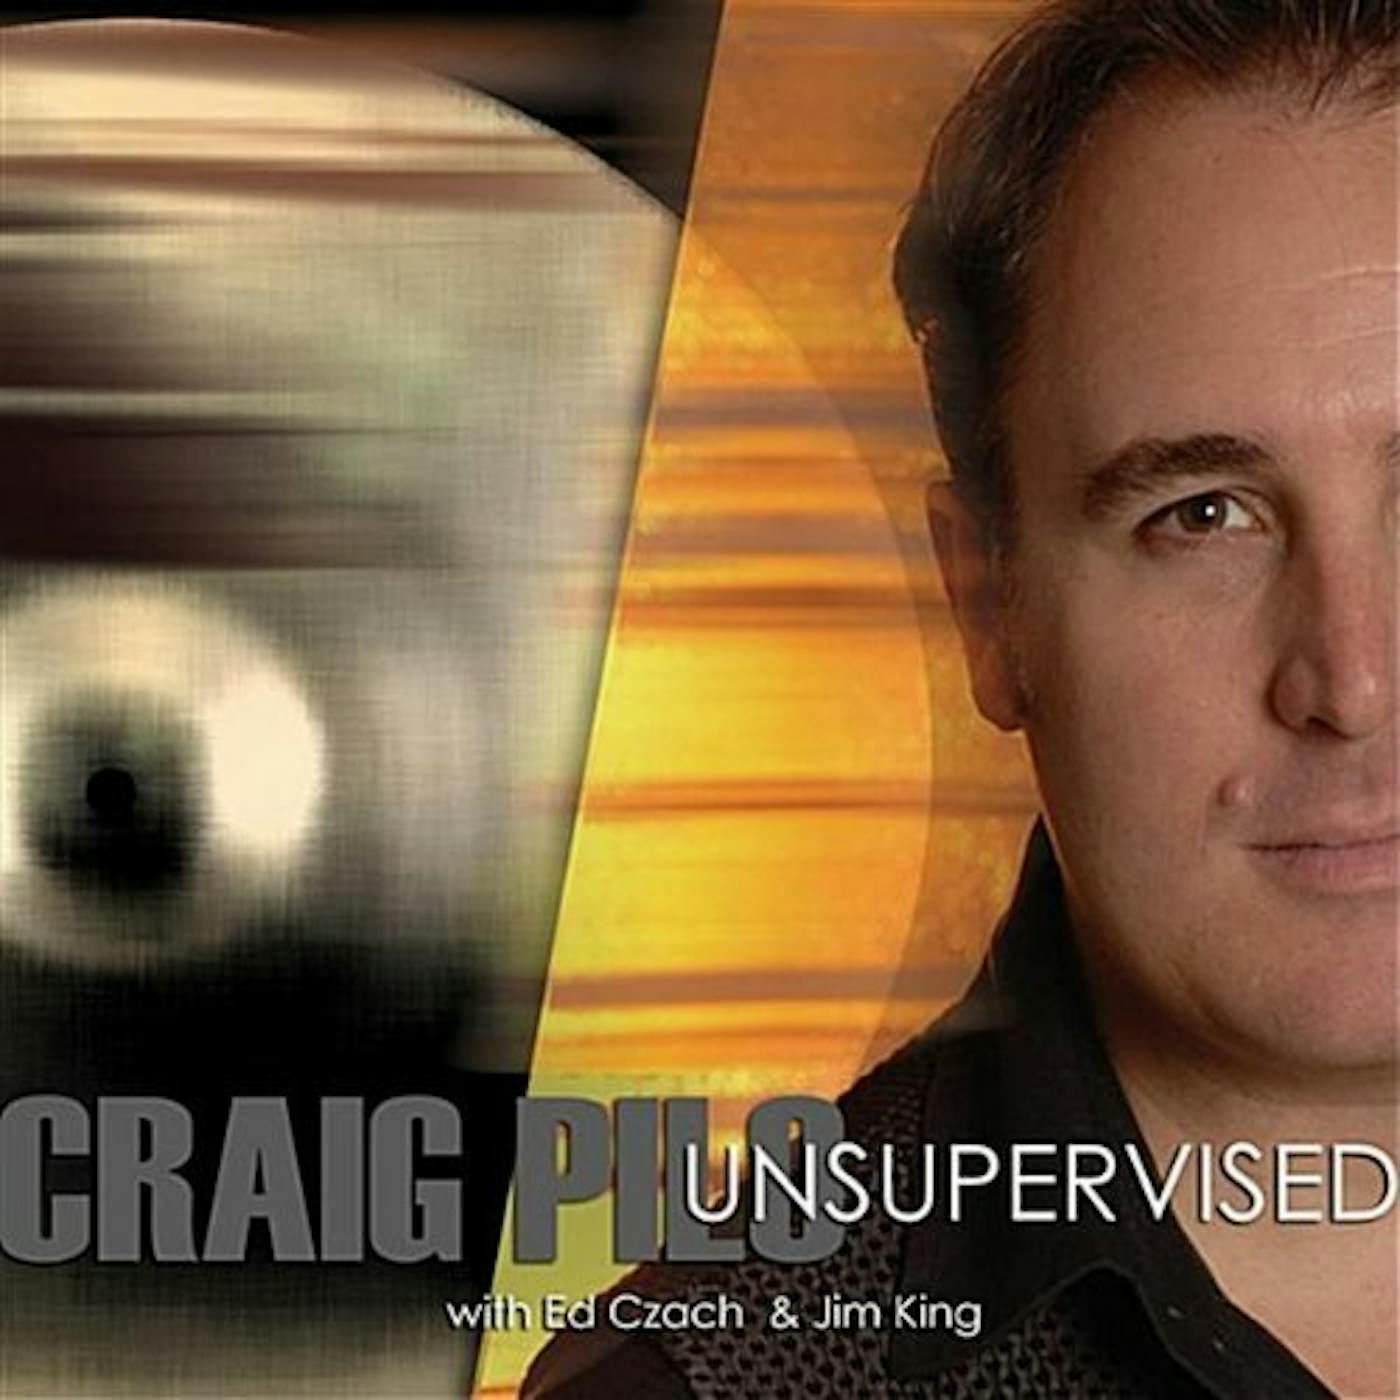 Craig Pilo UNSUPERVISED CD